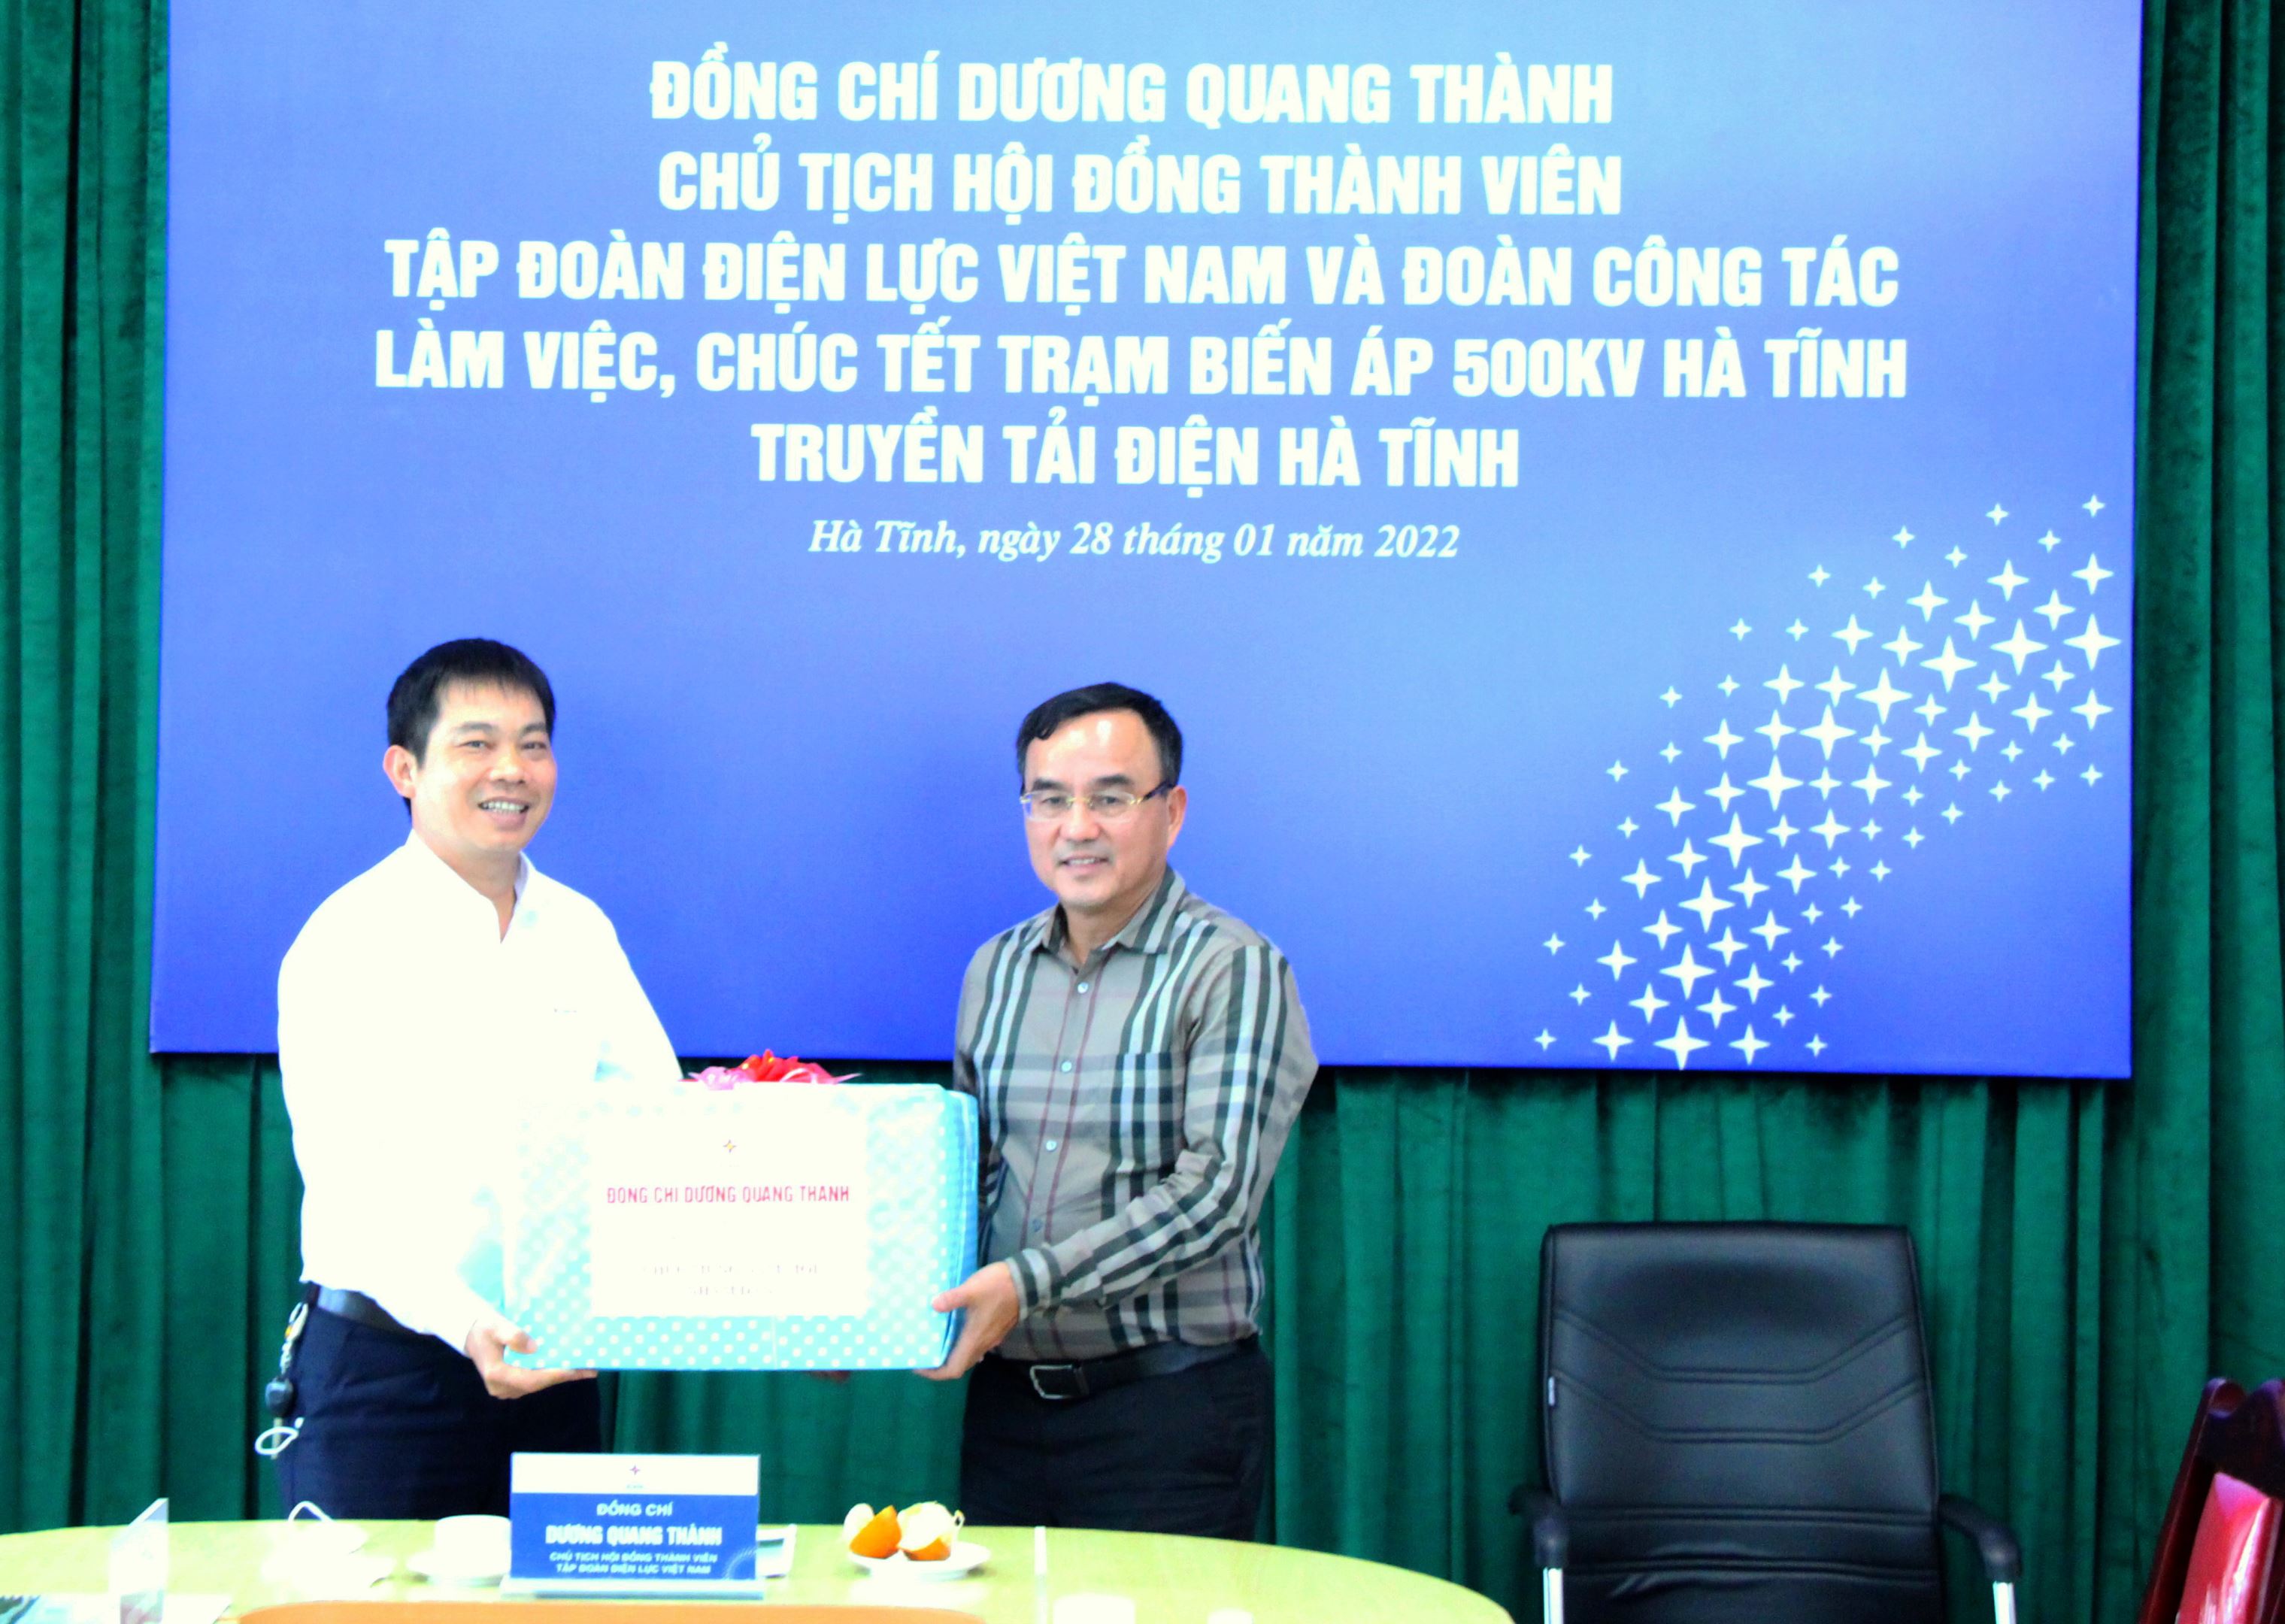 EVN Dương Quang Thành: Chào mừng đến với EVN Dương Quang Thành - một trong những công ty điện lực hàng đầu tại Việt Nam. Với cam kết đầu tư và cải thiện hệ thống điện lực đồng bộ, chúng tôi đang giúp nâng cao chất lượng cuộc sống và sự phát triển kinh tế của Việt Nam. Hãy cùng chúng tôi đón nhận tương lai sáng tạo và bền vững!